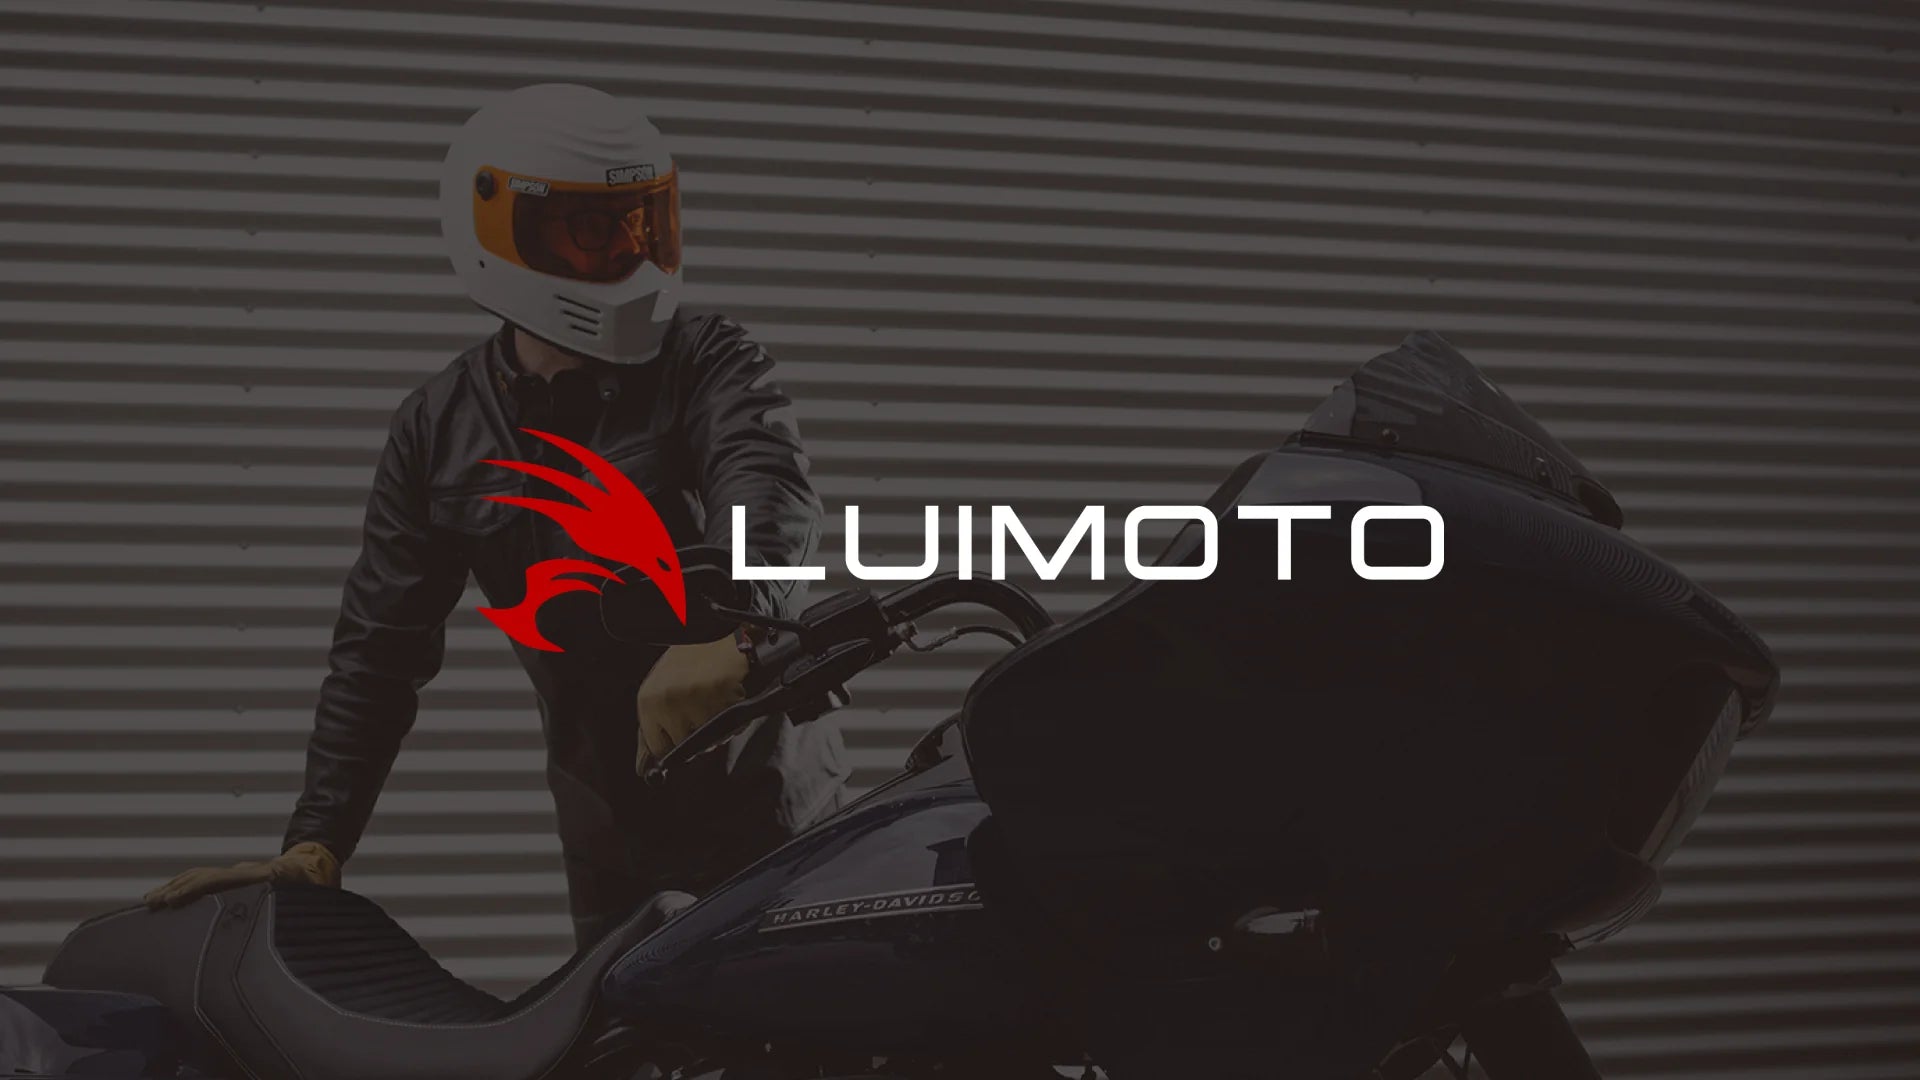 07-20 Kawasaki Versys 650 Rider Seat Cover (Sport) – Luimoto